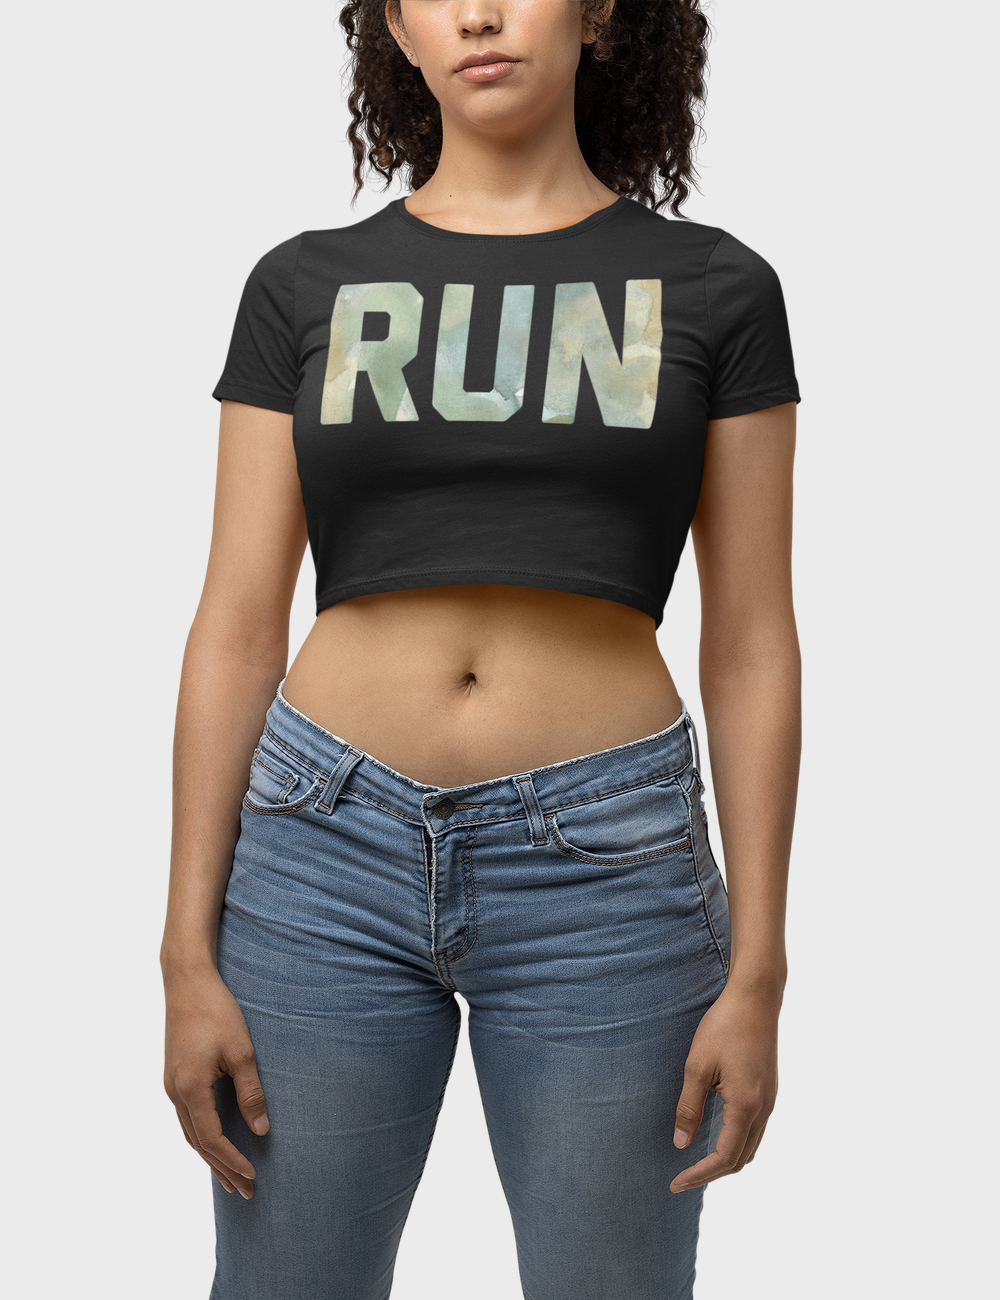 Run | Women's Fitted Crop Top T-Shirt OniTakai